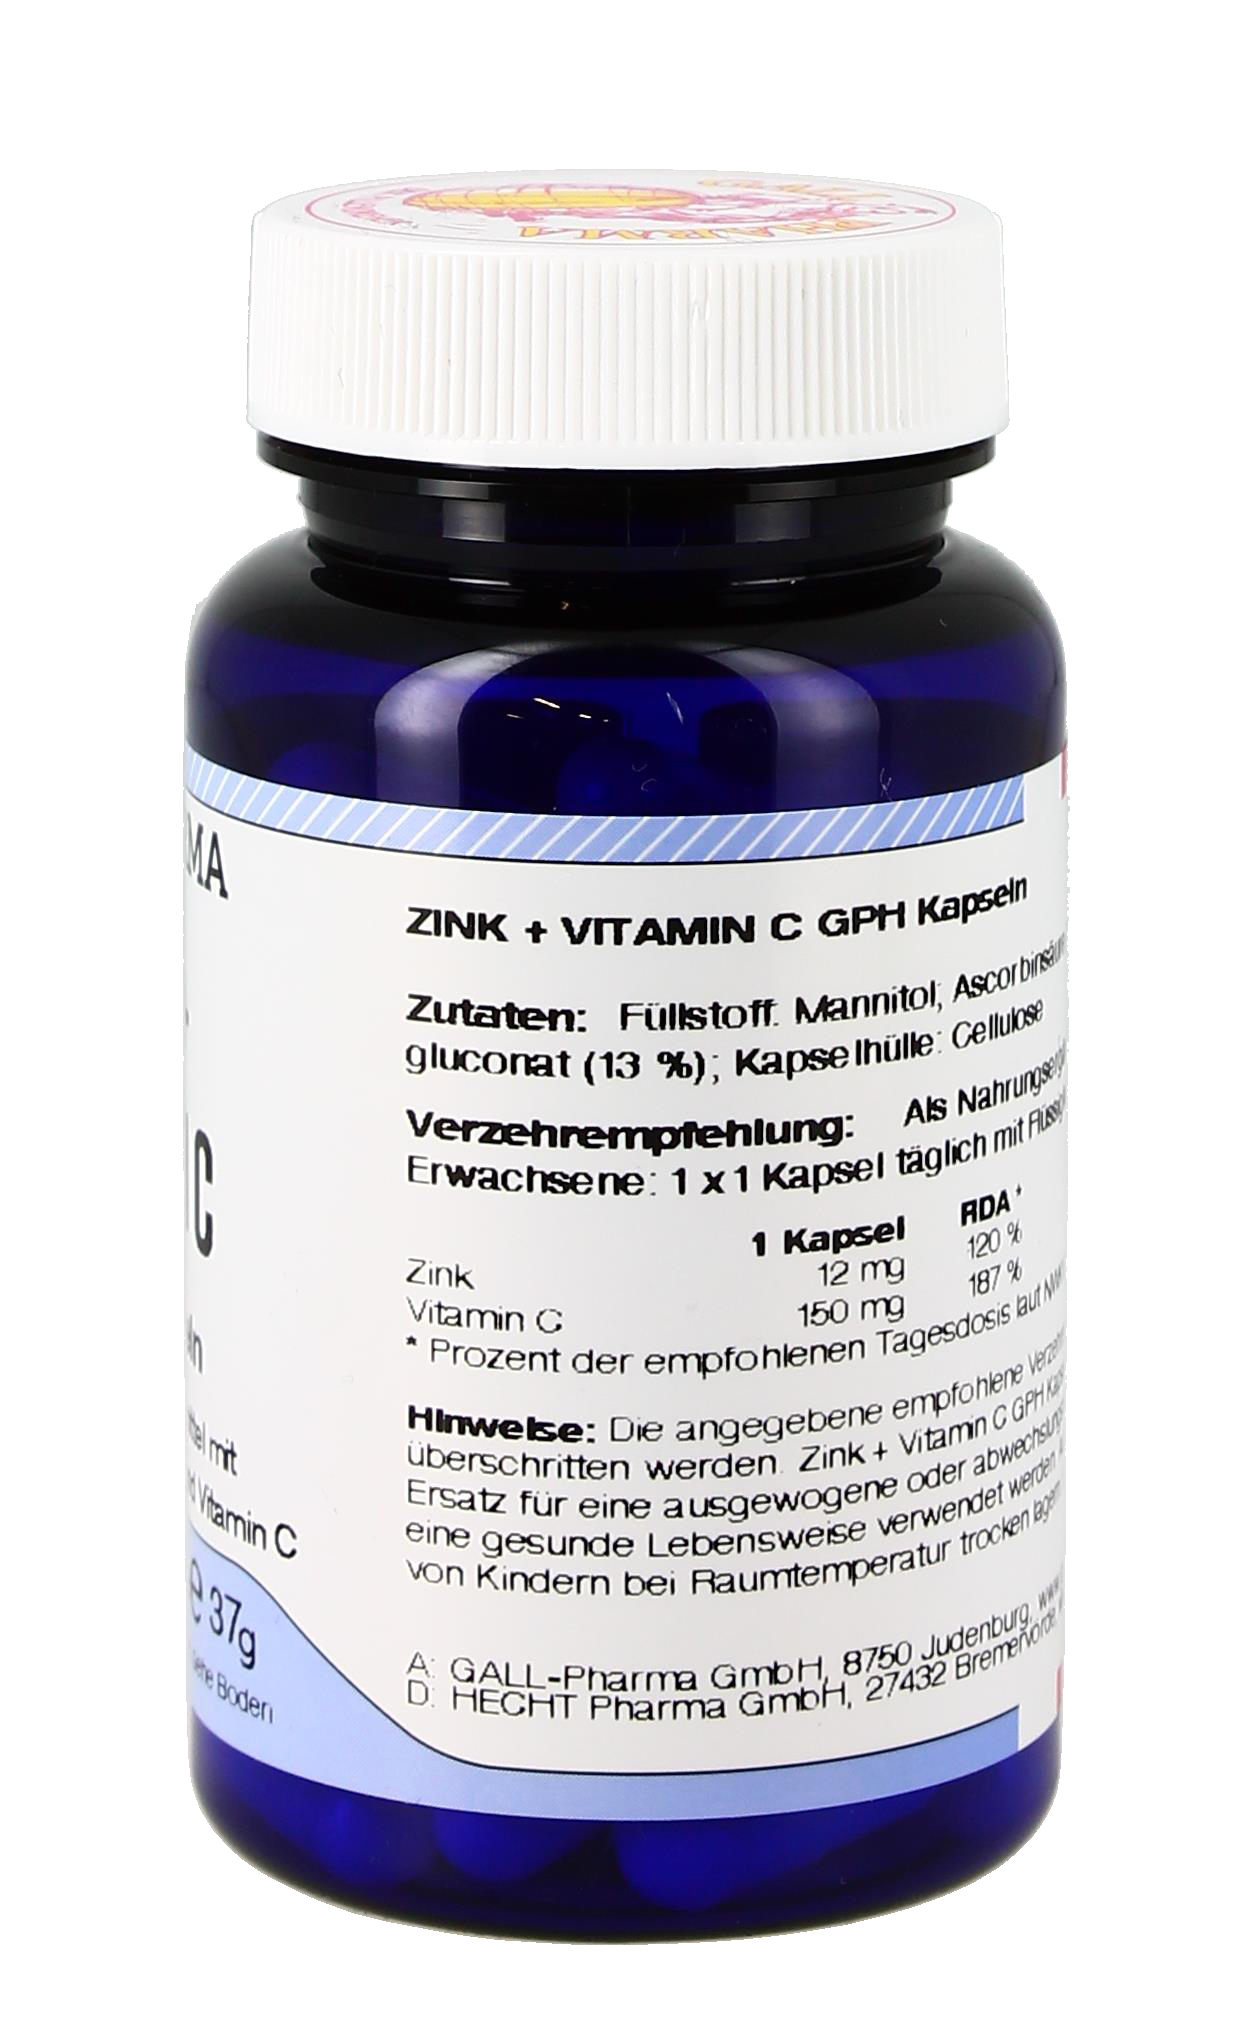 Zink + Vitamin C GPH 60 ST.